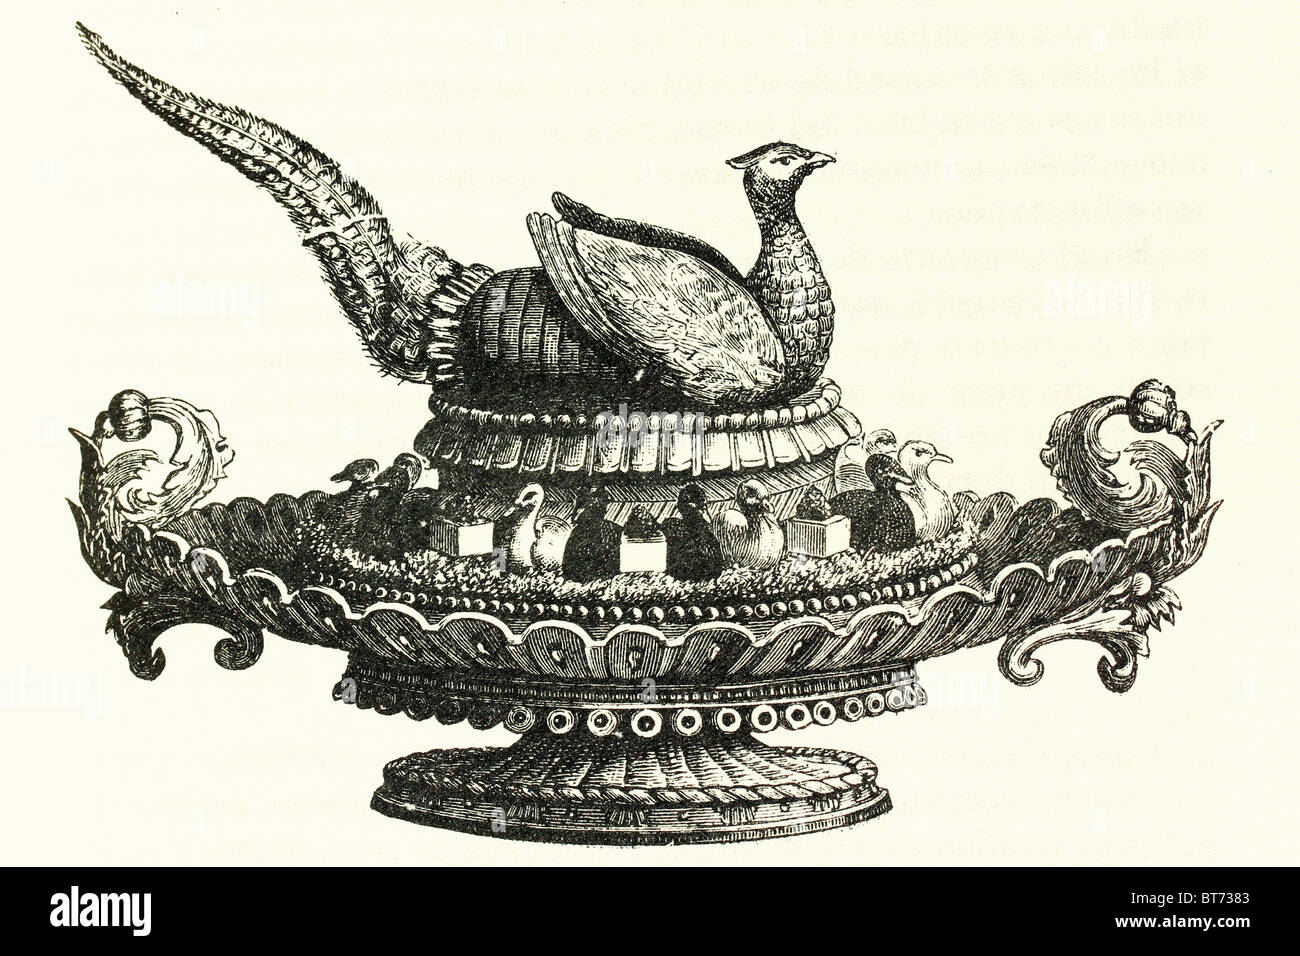 Il fagiano cotto in un vassoio. Presentazione accattivante. Illustrazione di antiquariato. 1892 Foto Stock